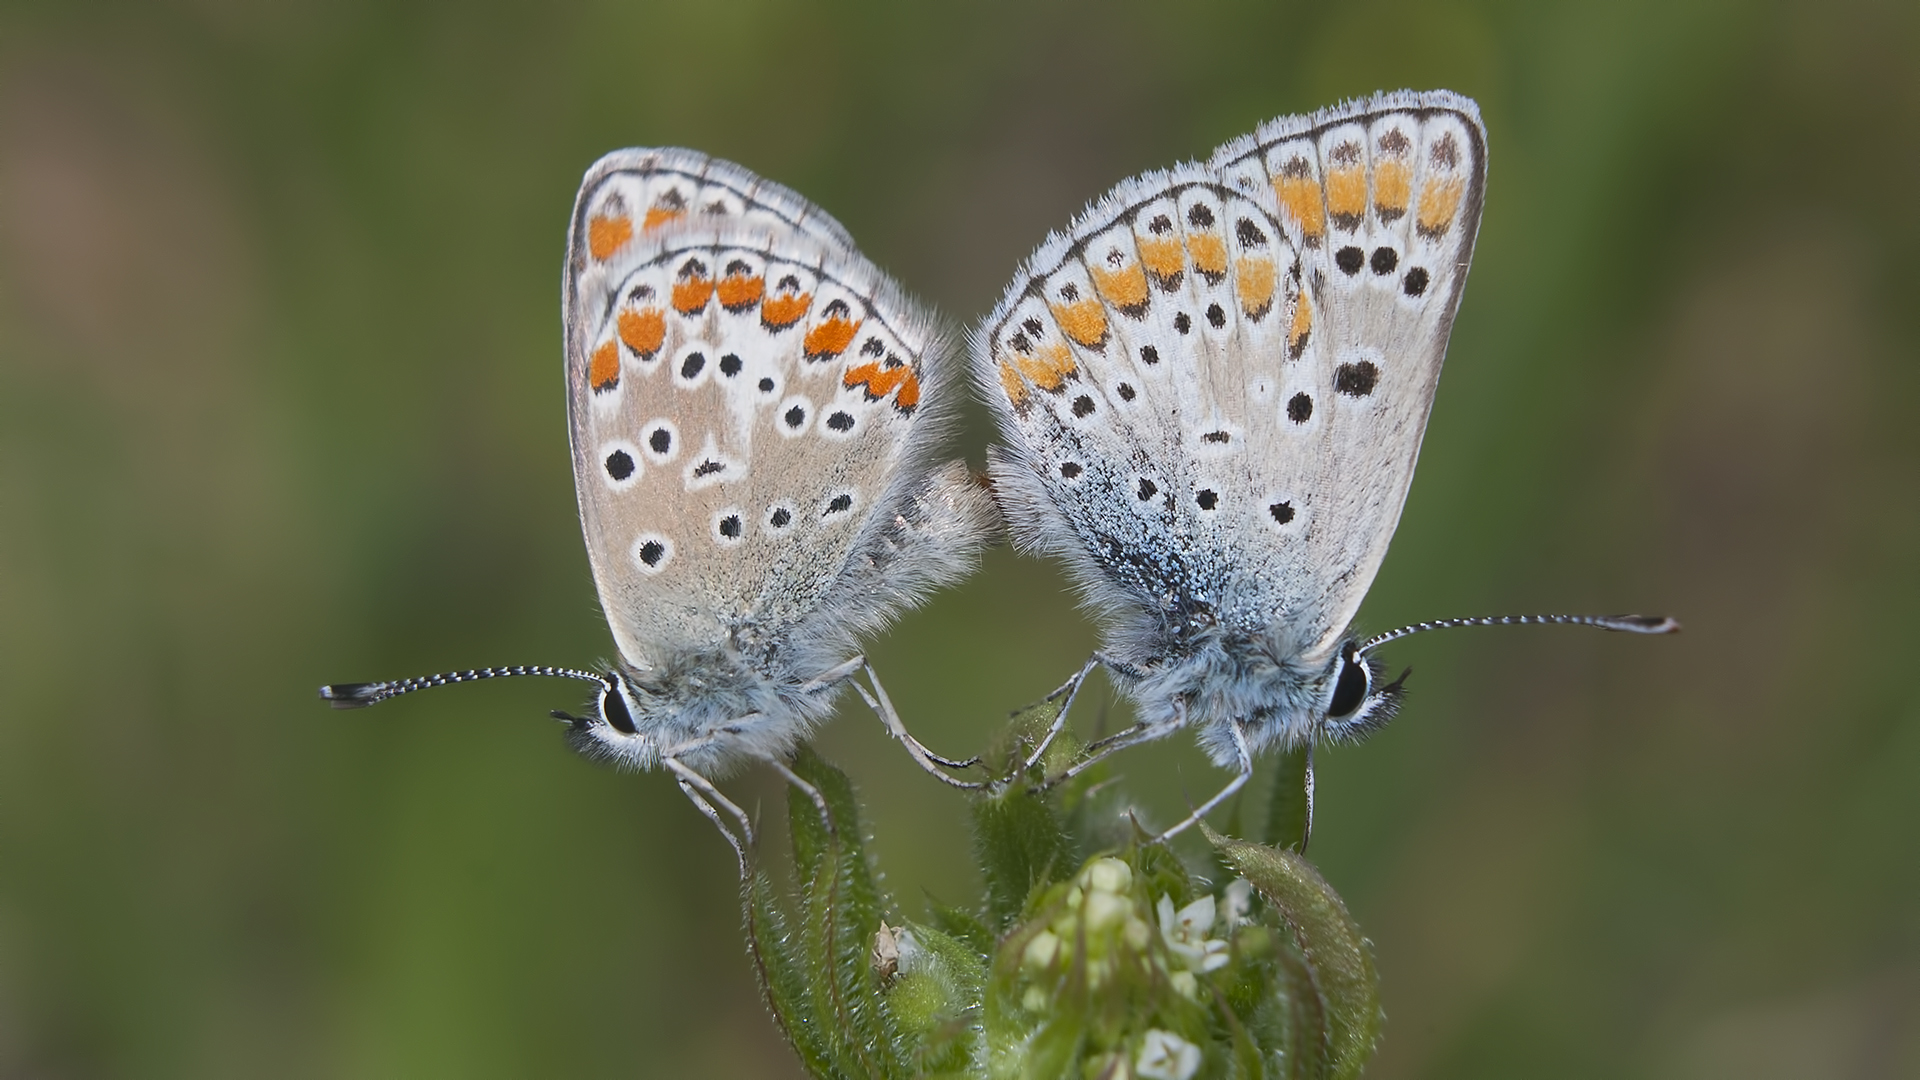  İstanbul'un kelebekleri tehdit altında: 30 tür yok oldu 